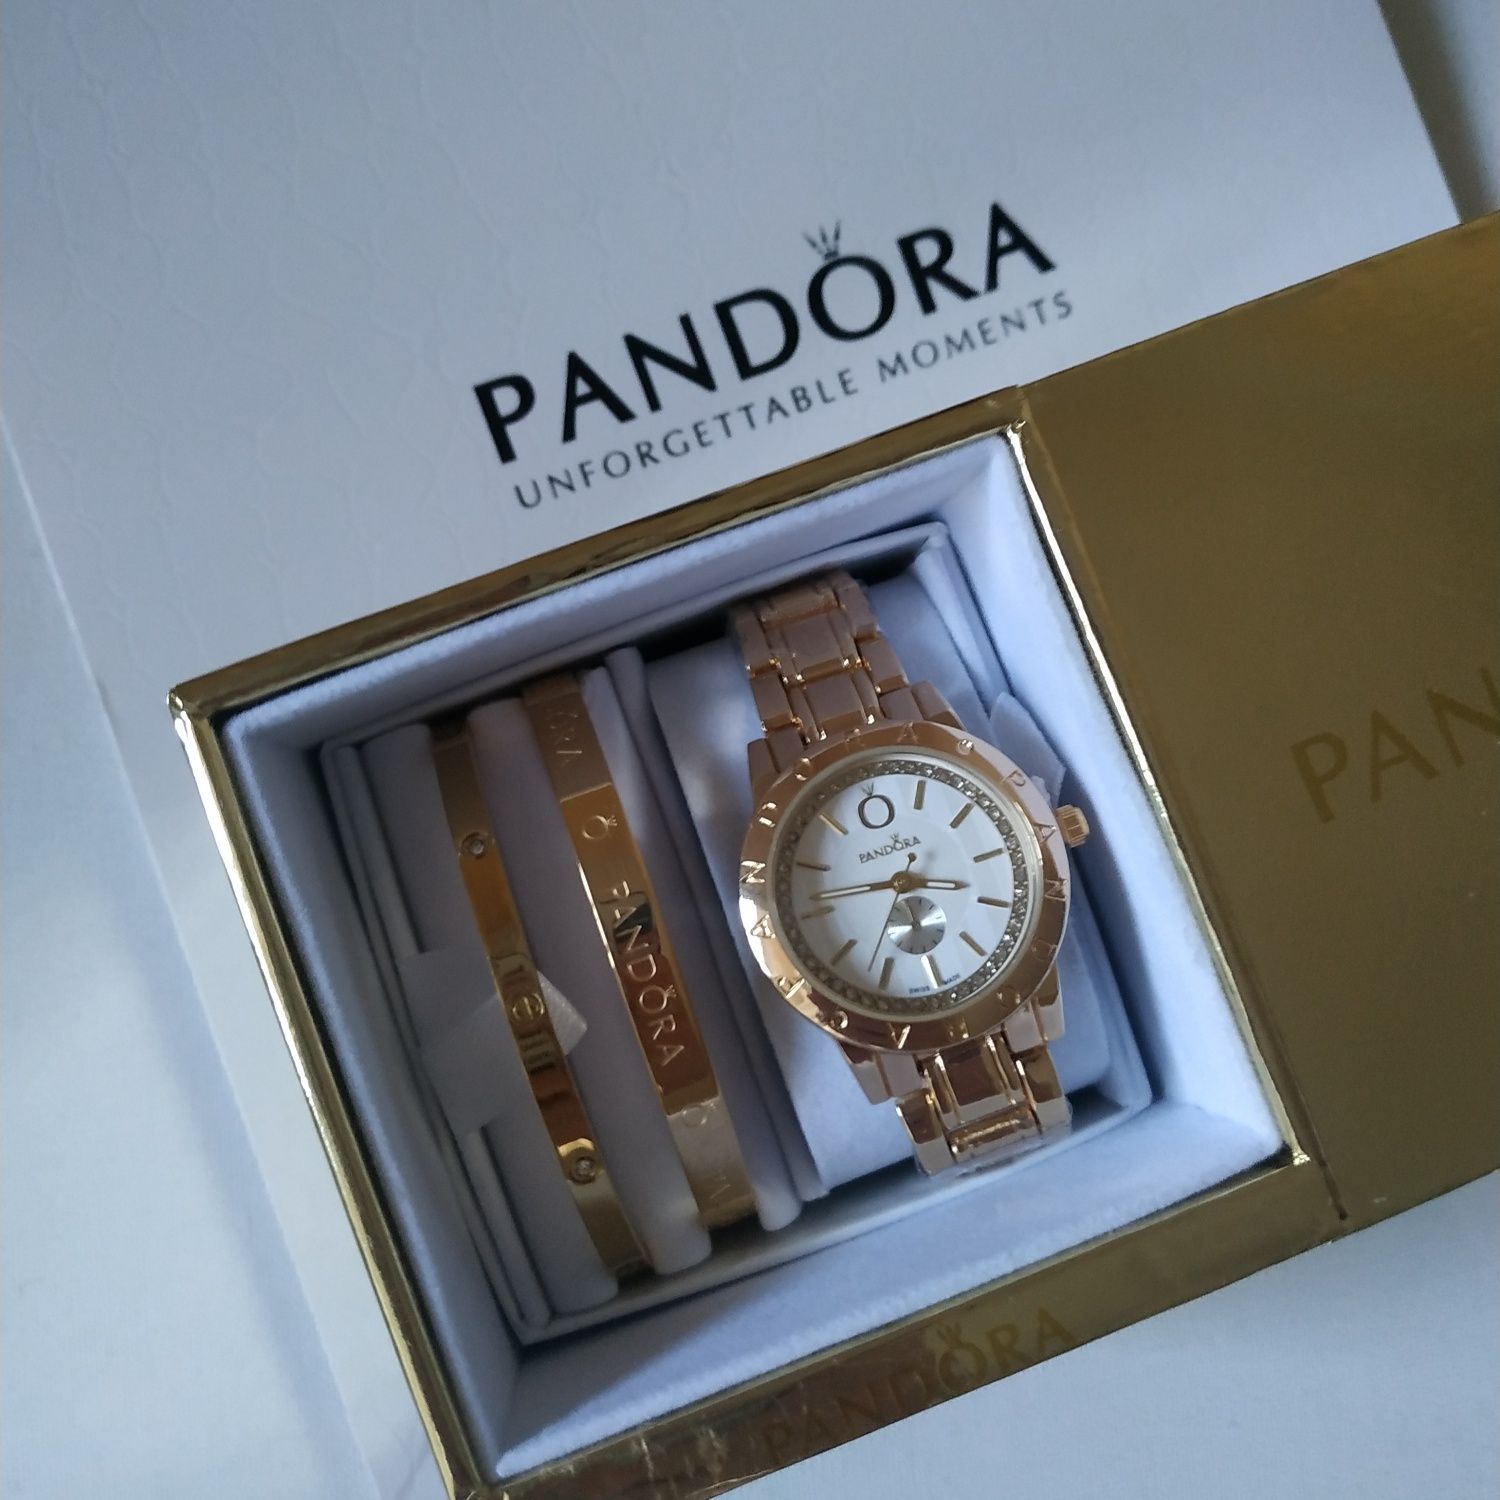 Шикарные часы Pandora. Подарочные наборы.